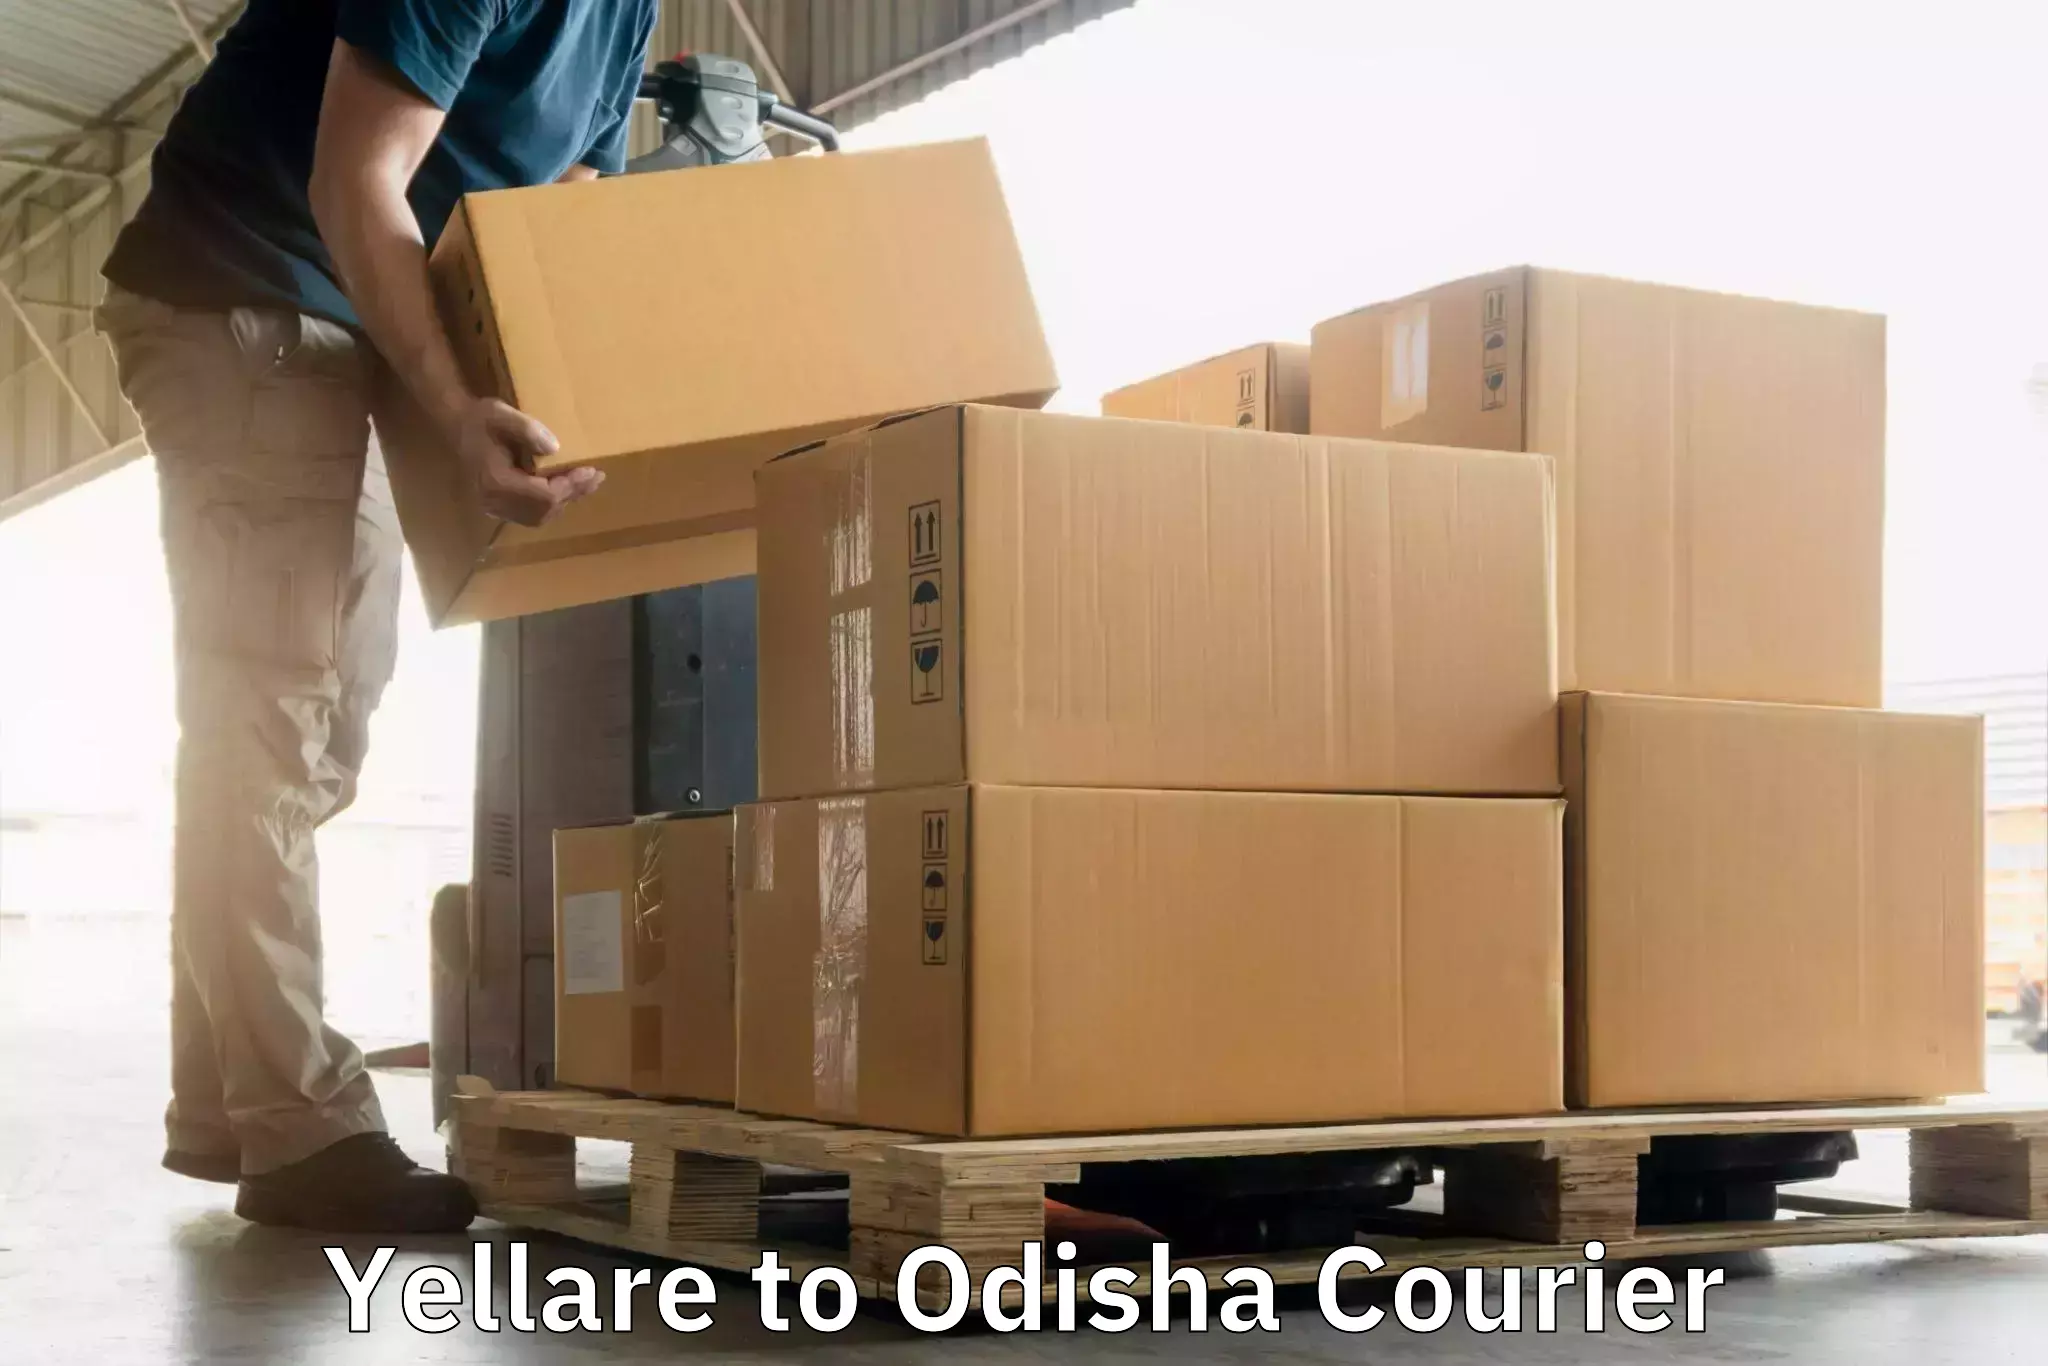 Custom courier rates in Yellare to Semiliguda